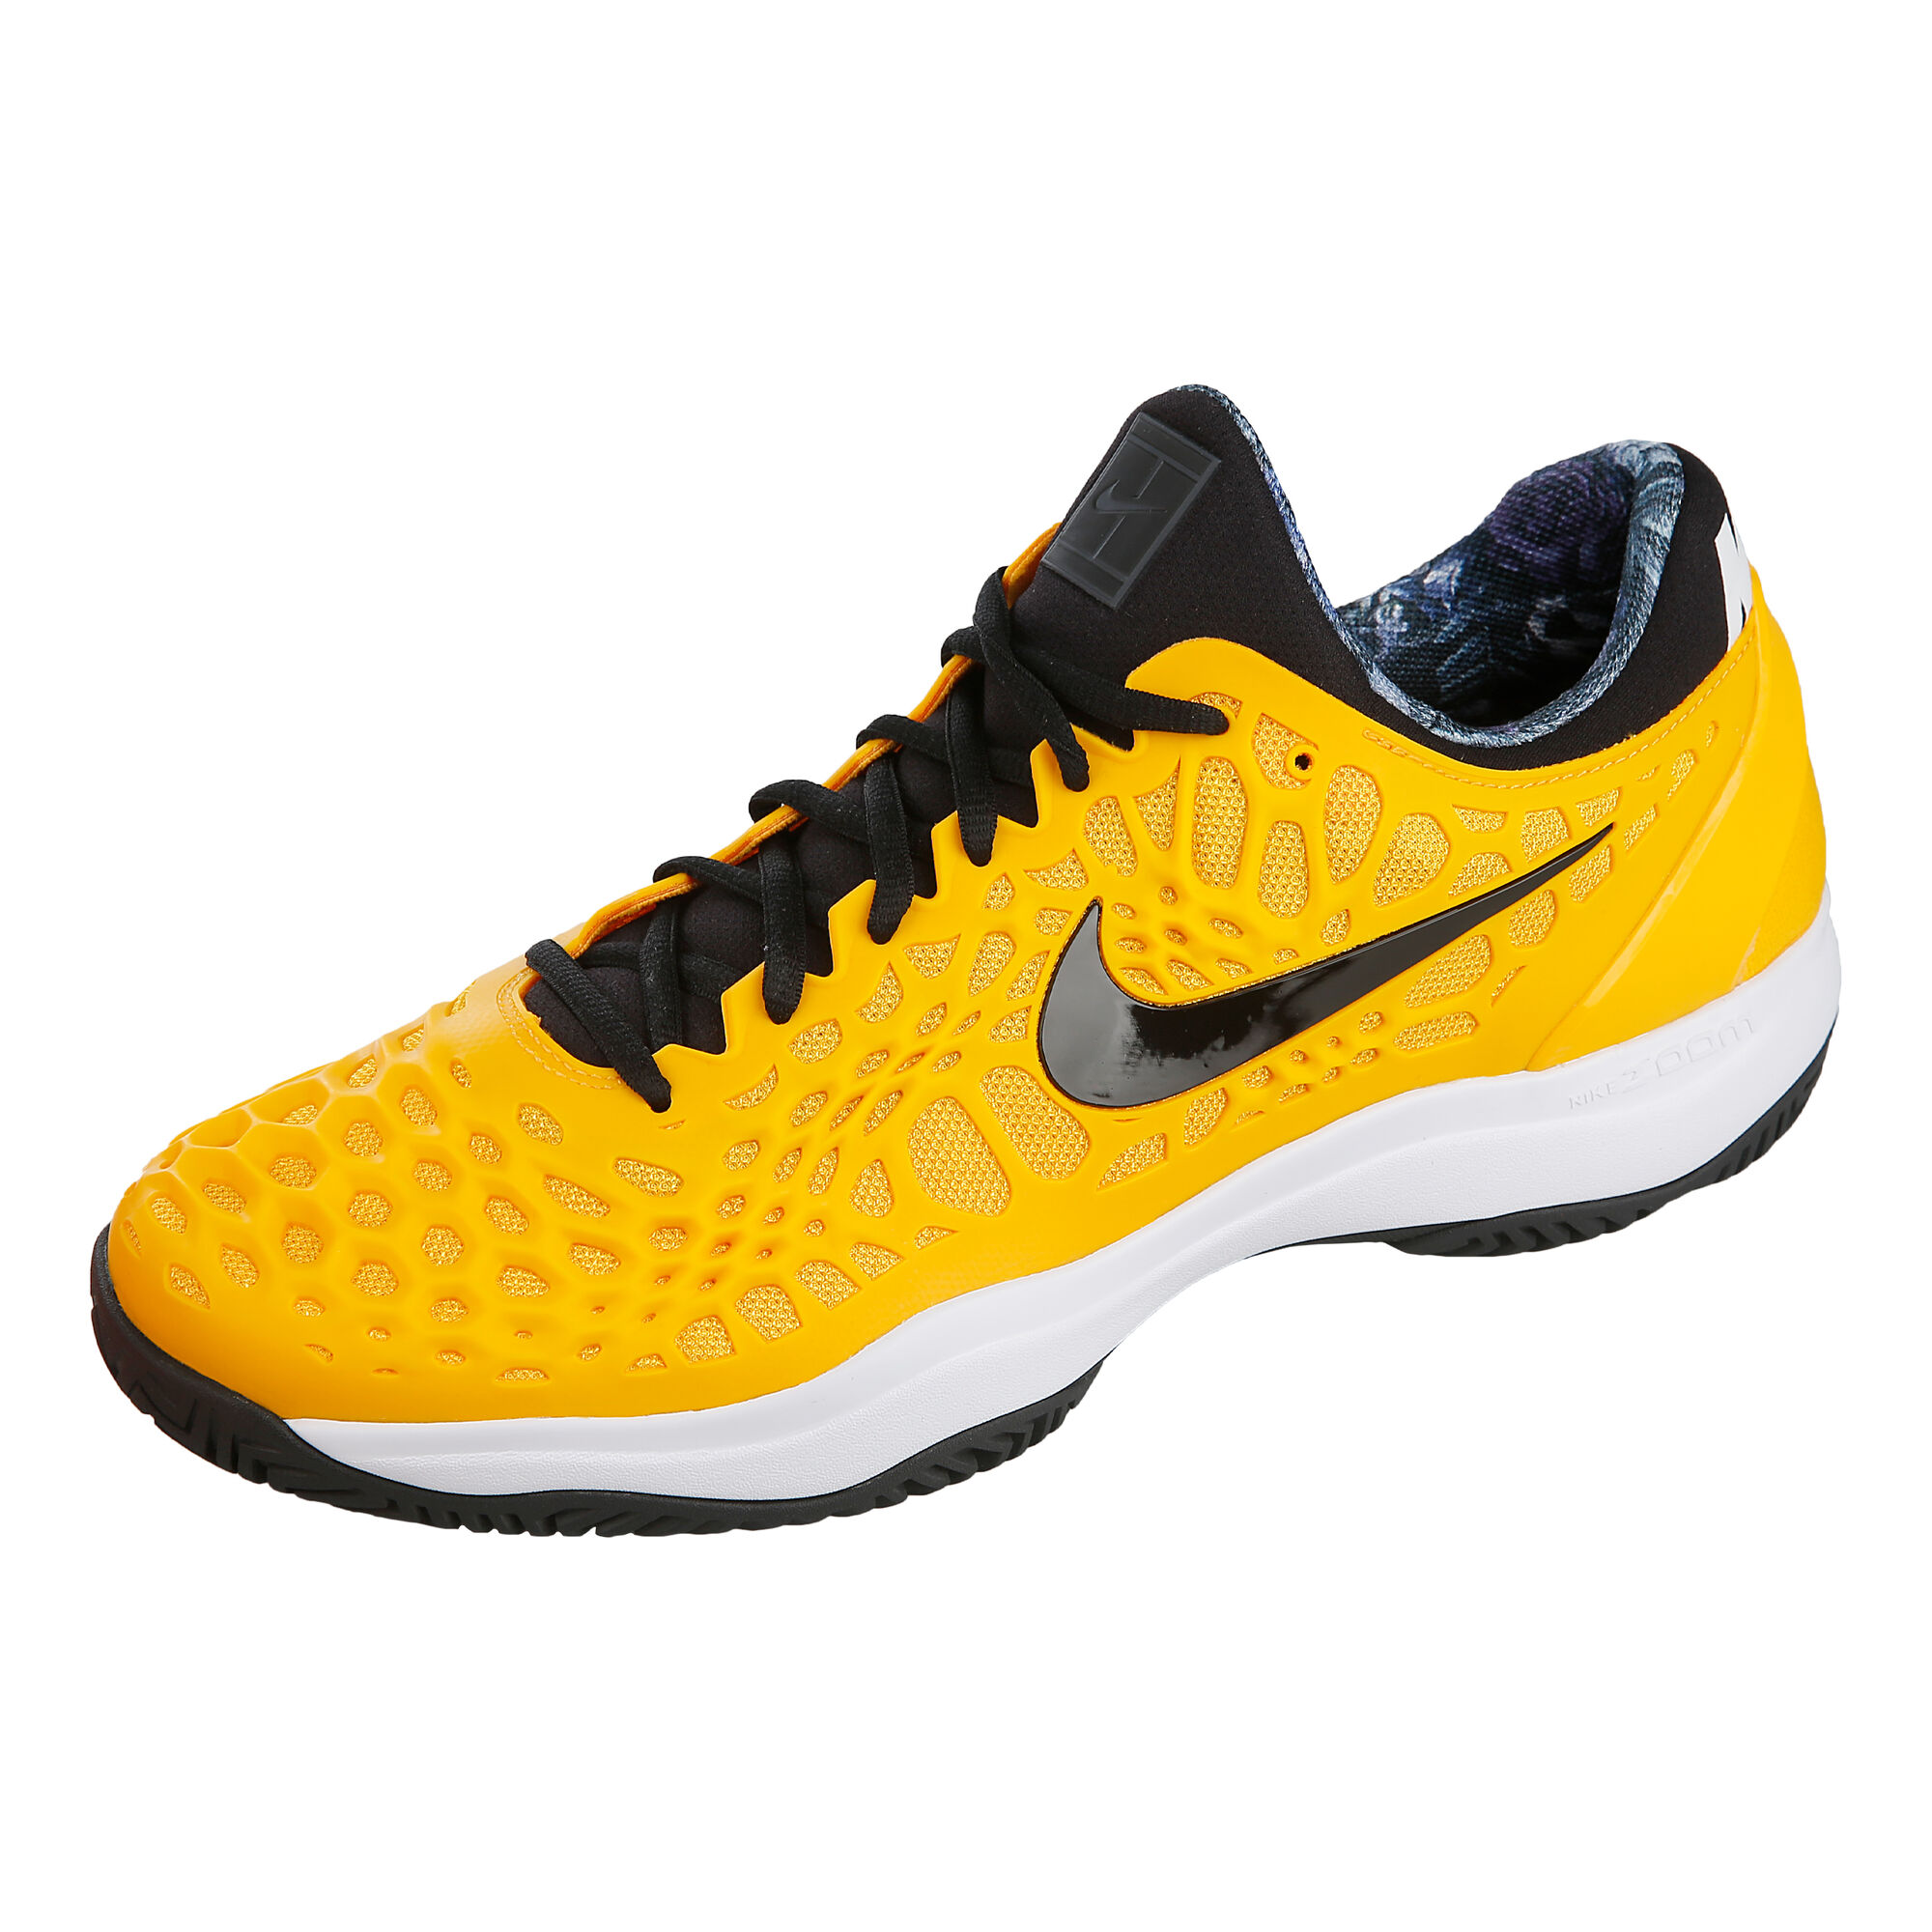 Speeltoestellen Ale Jongleren buy Nike Zoom Cage 3 All Court Shoe Men - Golden Yellow, Black online |  Tennis-Point